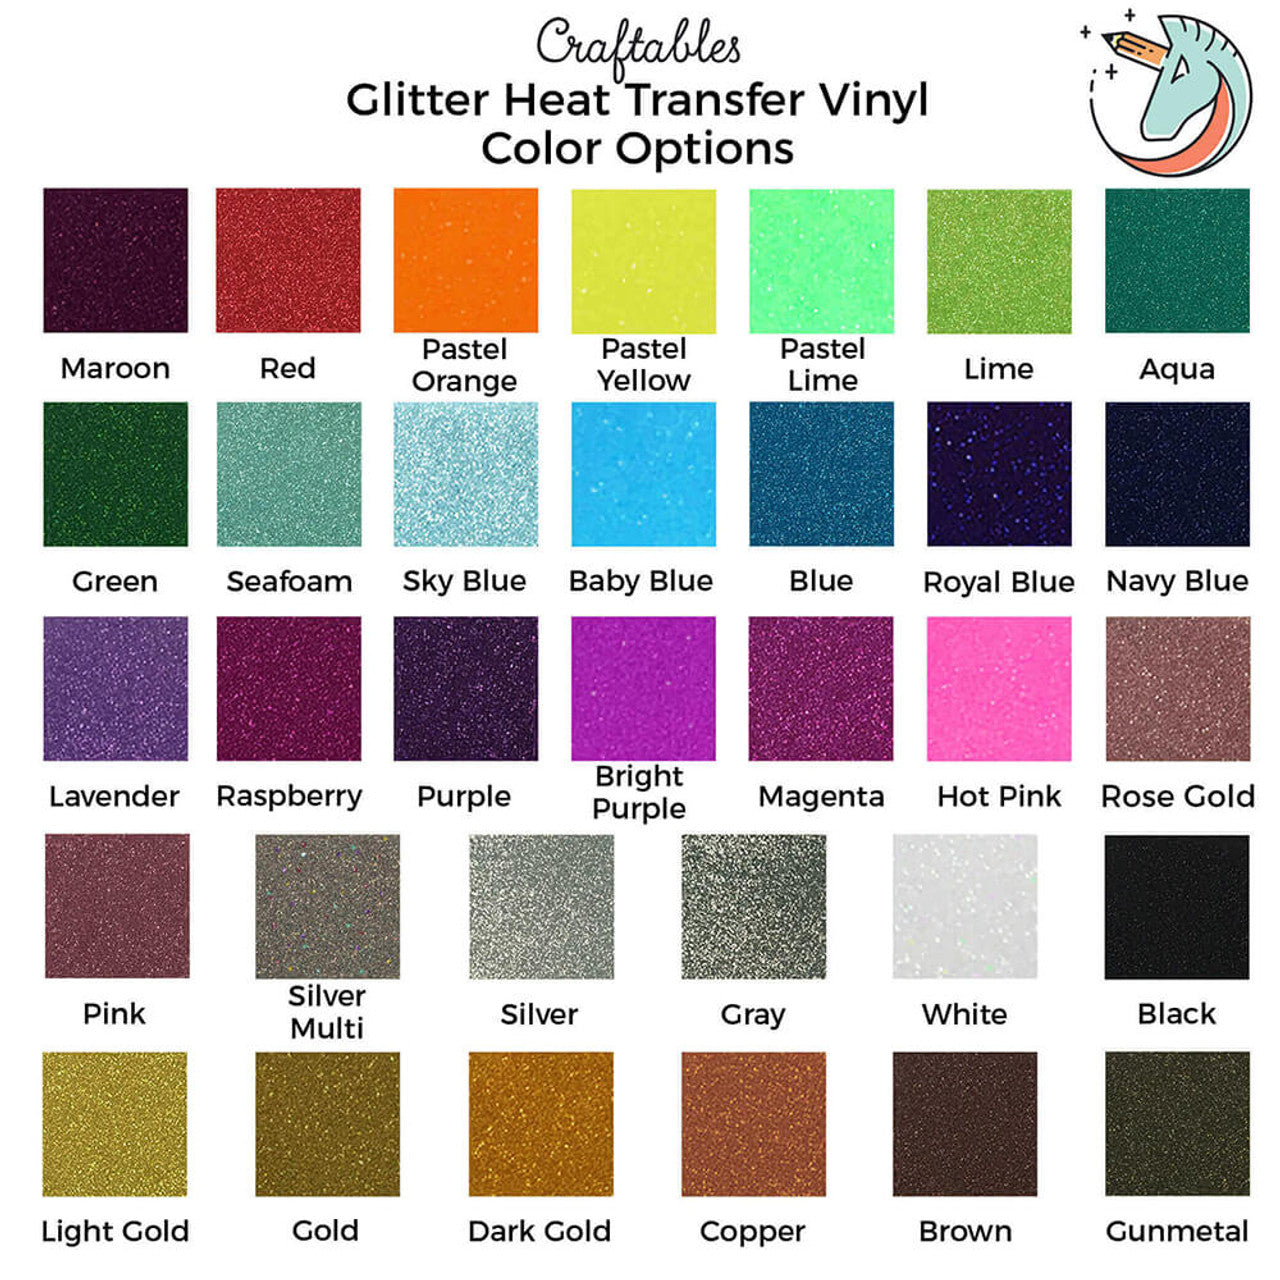 Sky Blue Glitter Heat Transfer Vinyl Sheets By Craftables – shopcraftables